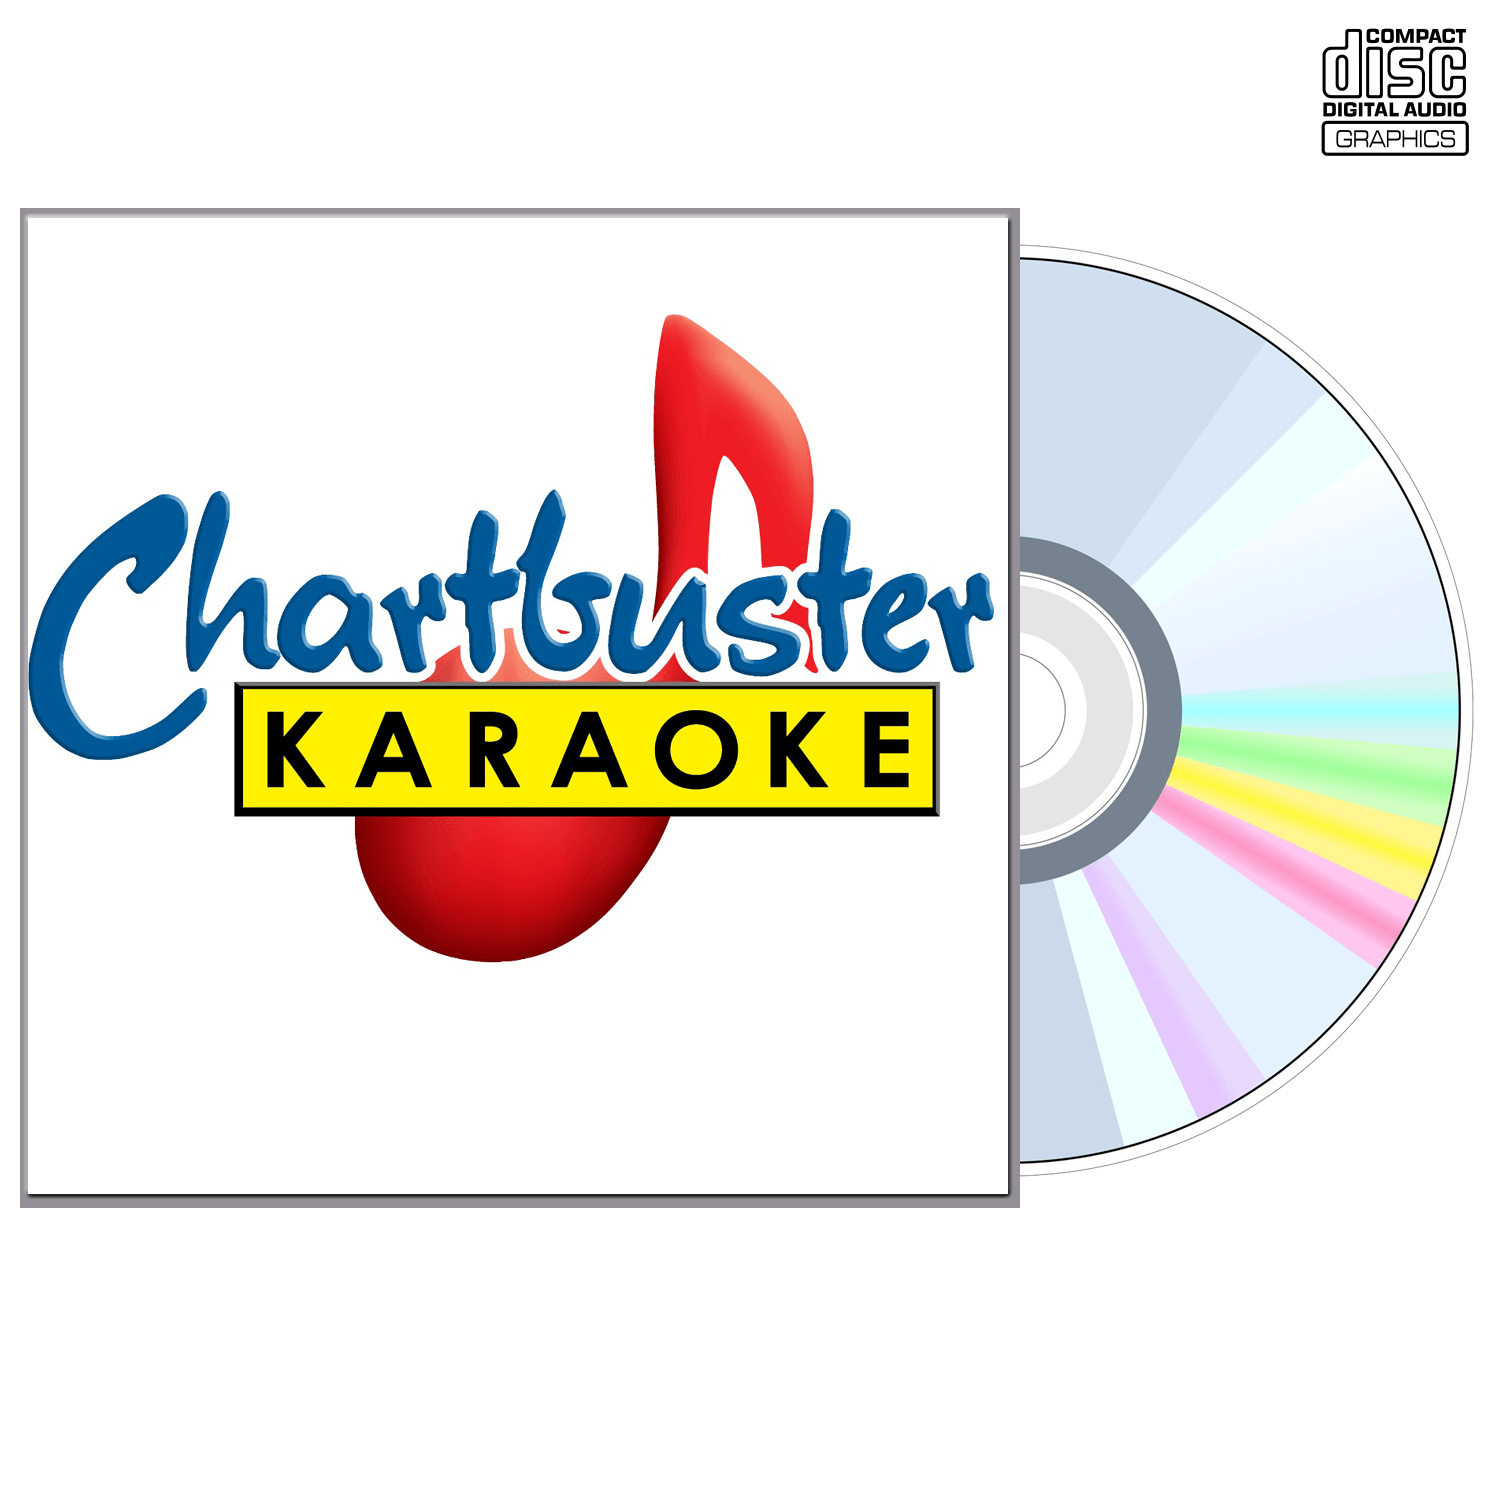 Kathy Mattea Vol 2 - CD+G - Chartbuster Karaoke - Karaoke Home Entertainment